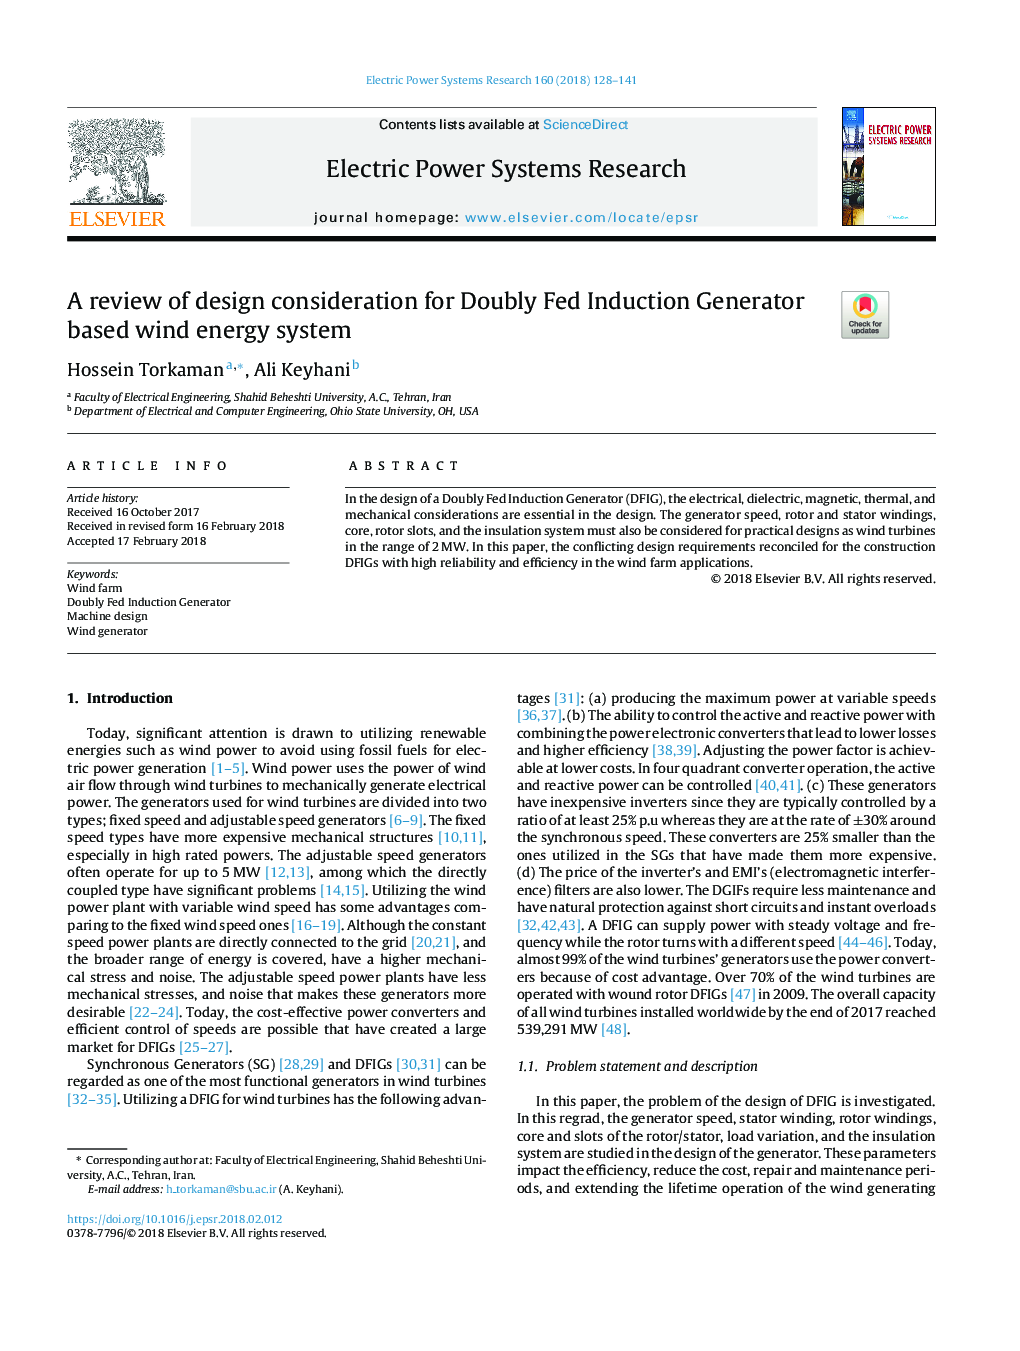 بررسی انرژی مورد نظر در مورد سیستم انرژی باد مبتنی بر ژنراتور دیود باردار 